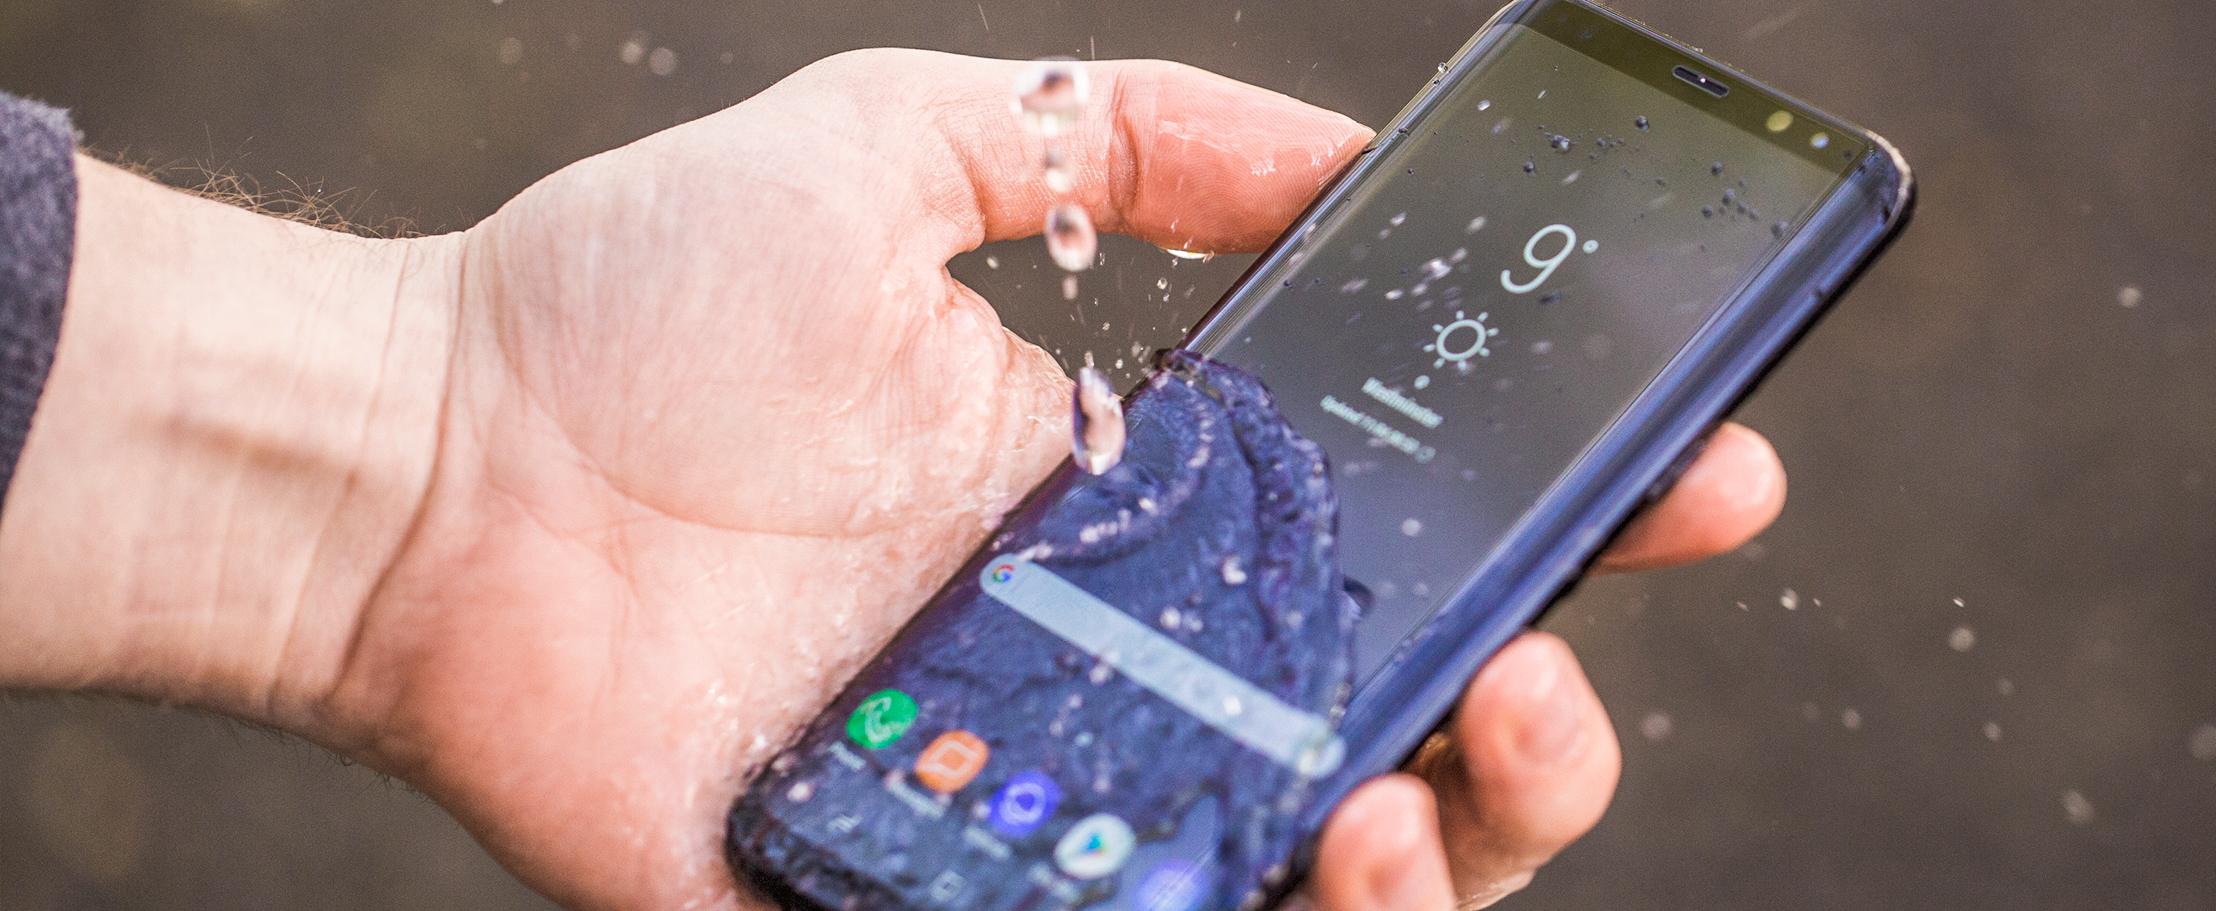 Думаете круче Galaxy S8 смартфона быть не может?